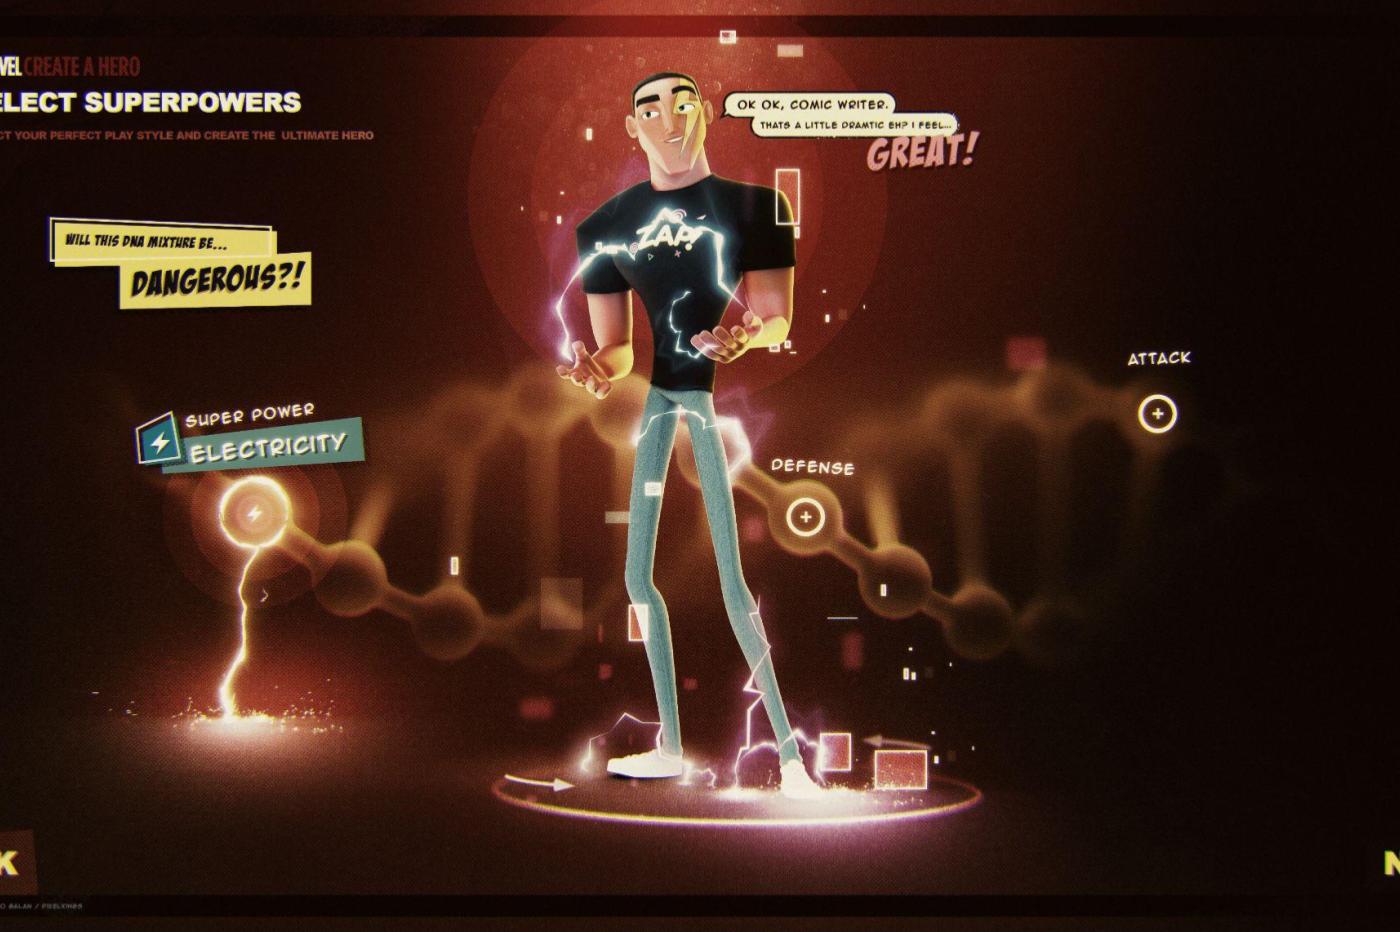 Image du menu de création de personnage de MMO Marvel annulé